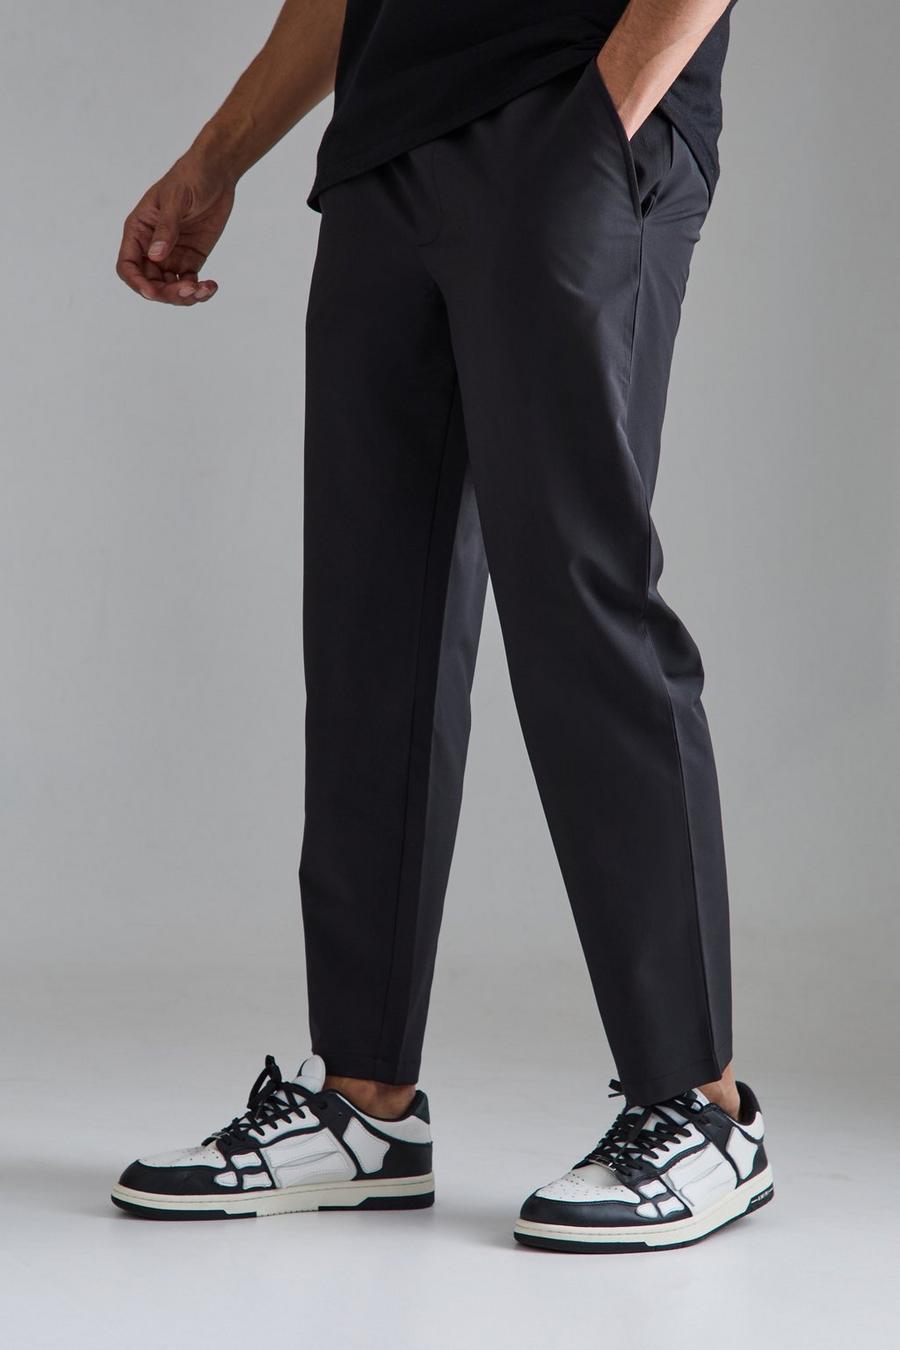 Pantaloni Smart affusolati con vita elasticizzata, Black